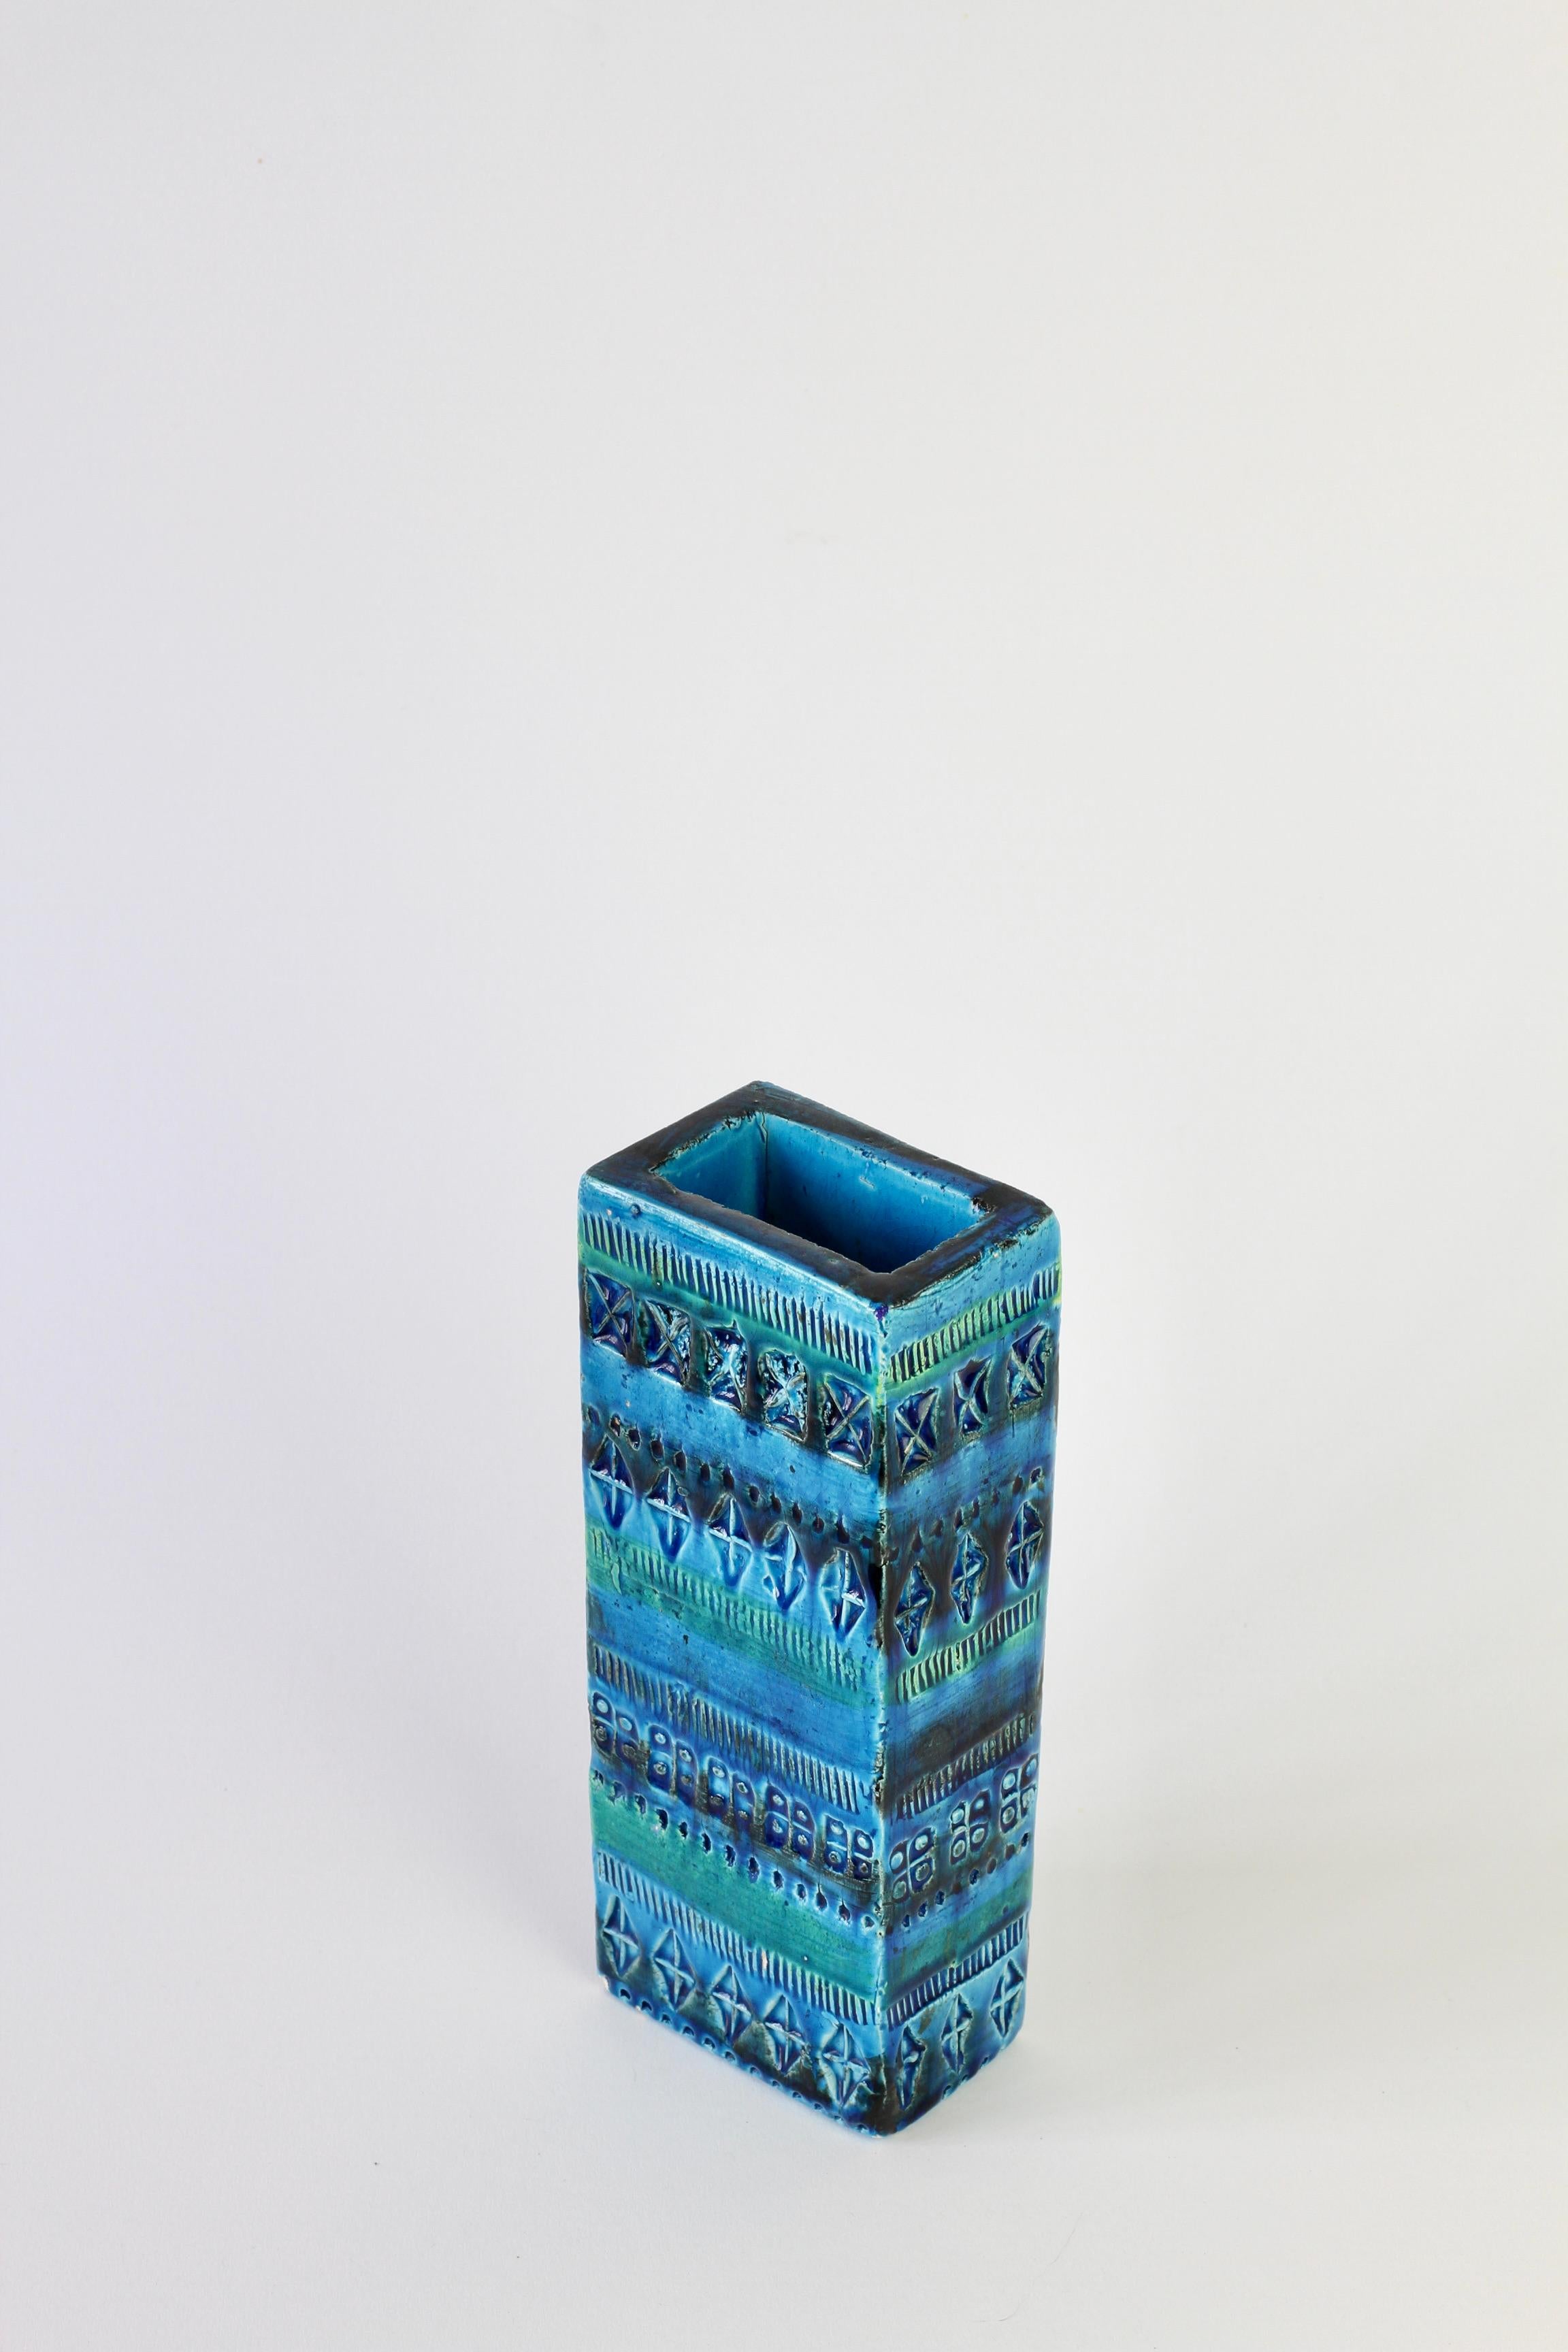 Magnifique grand vase gaufré en bleu vibrant 'Rhimini' et turquoise par Aldo Londi pour Bitossi, circa 1968. Une superbe pièce de poterie italienne vintage, faite à la main au milieu du siècle. 

Numéro de forme 727/21.

Nous avons d'autres